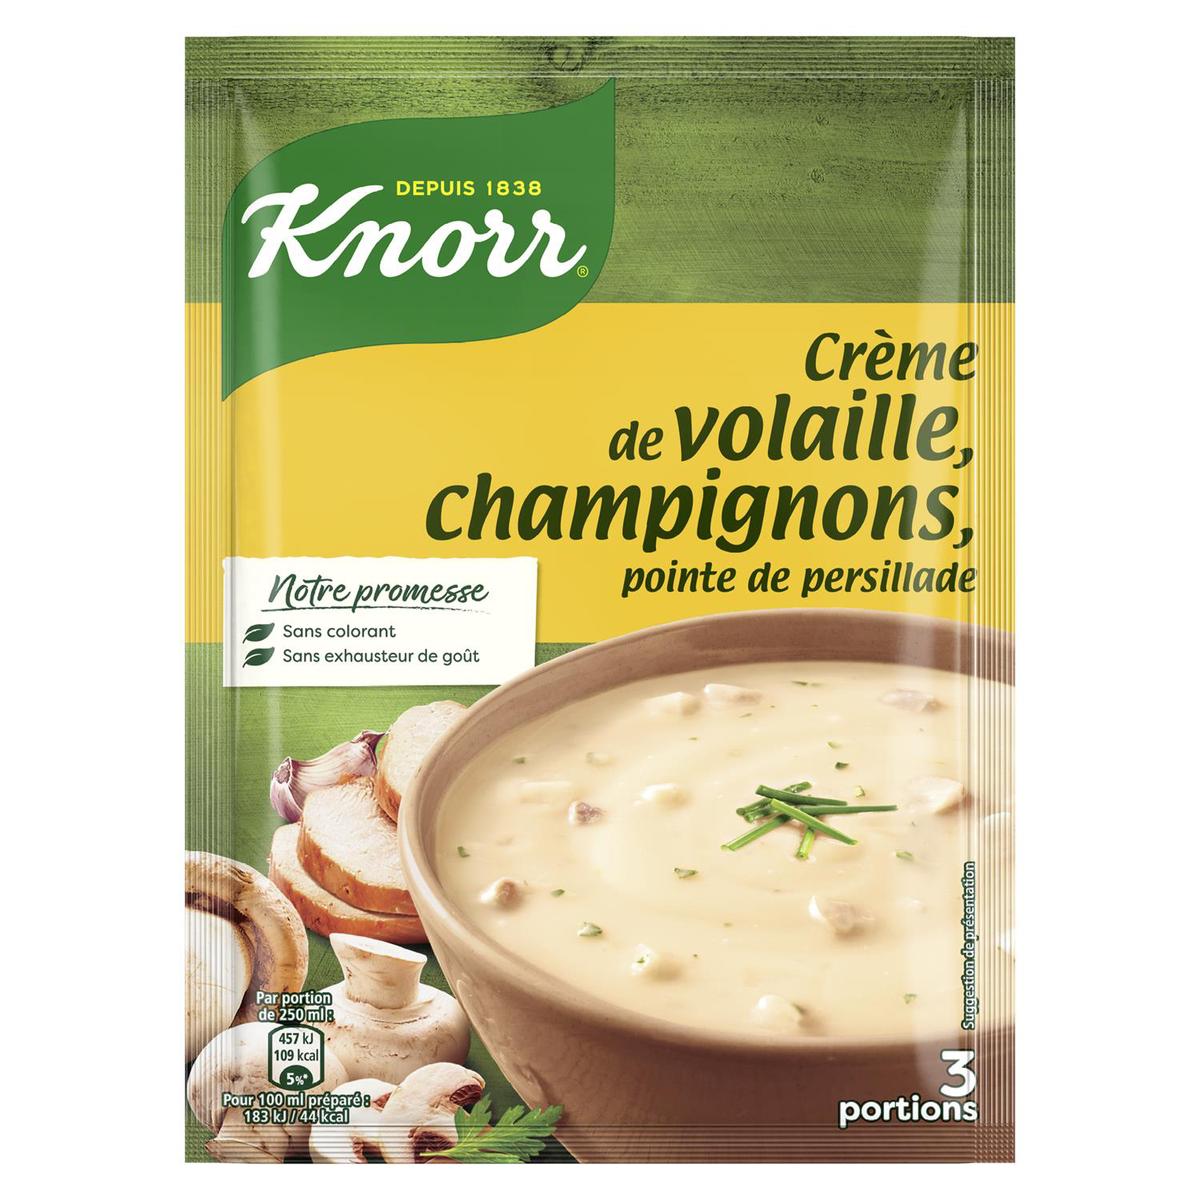 Knorr Fécule de pommes de terre 5 KG